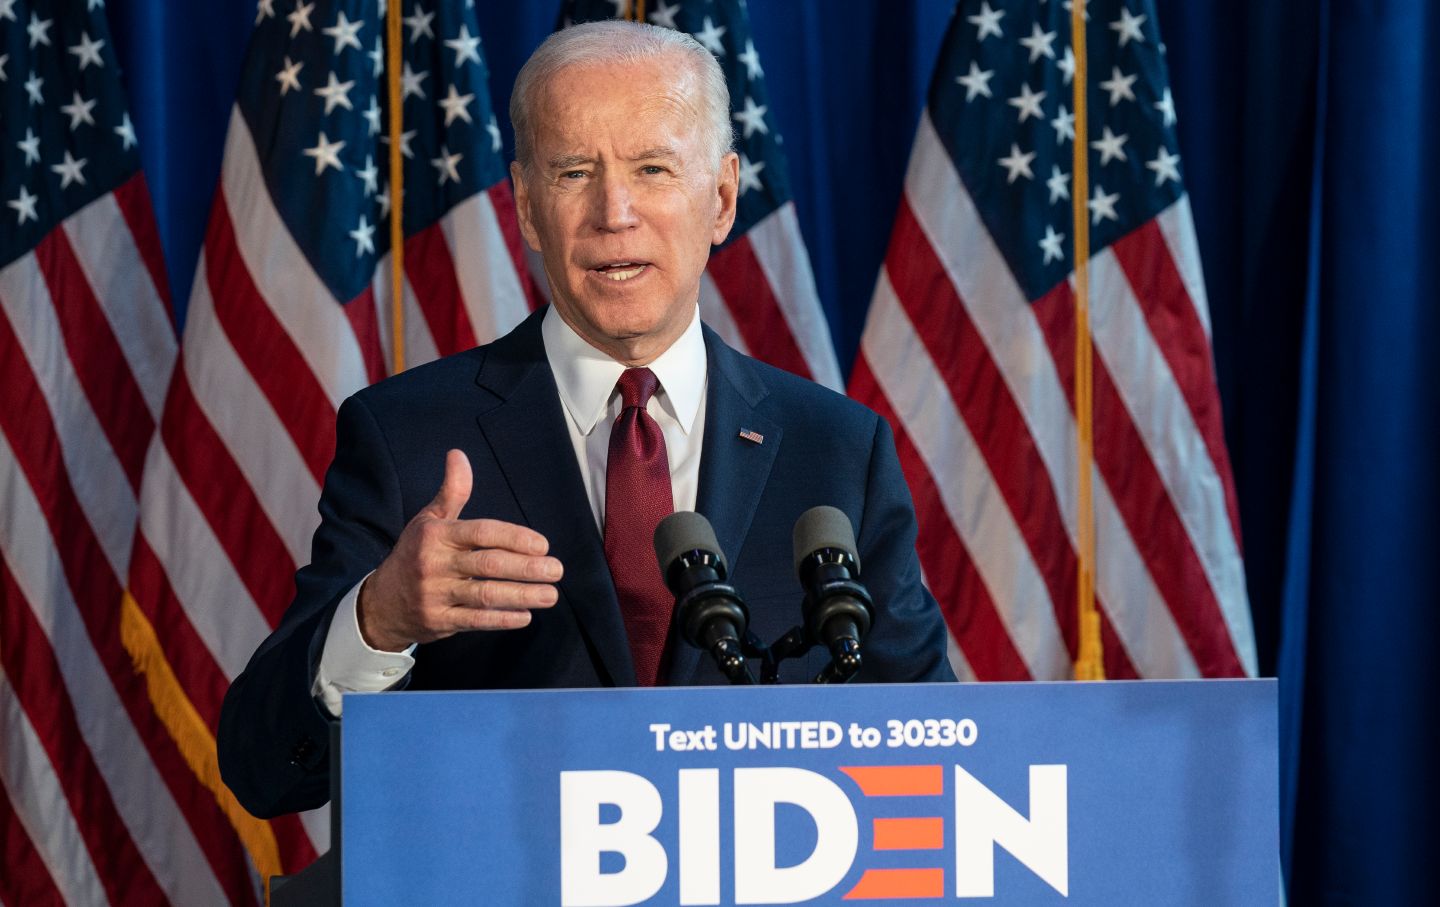 Joe Biden speaking in front of a lectern